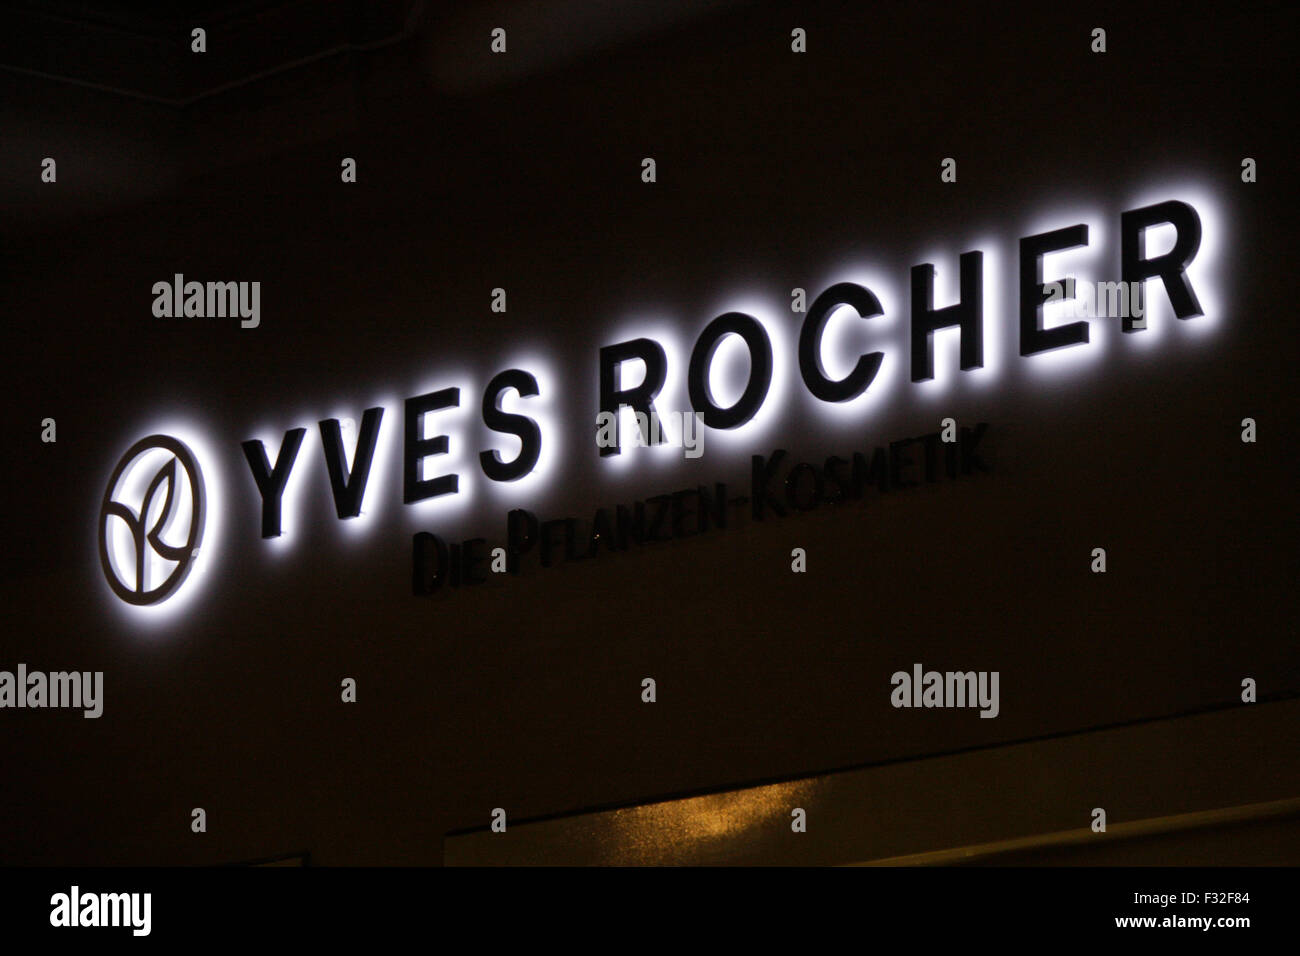 Leuchtreklame fuer 'Yves Rocher', November 2013, Berlin. Stock Photo